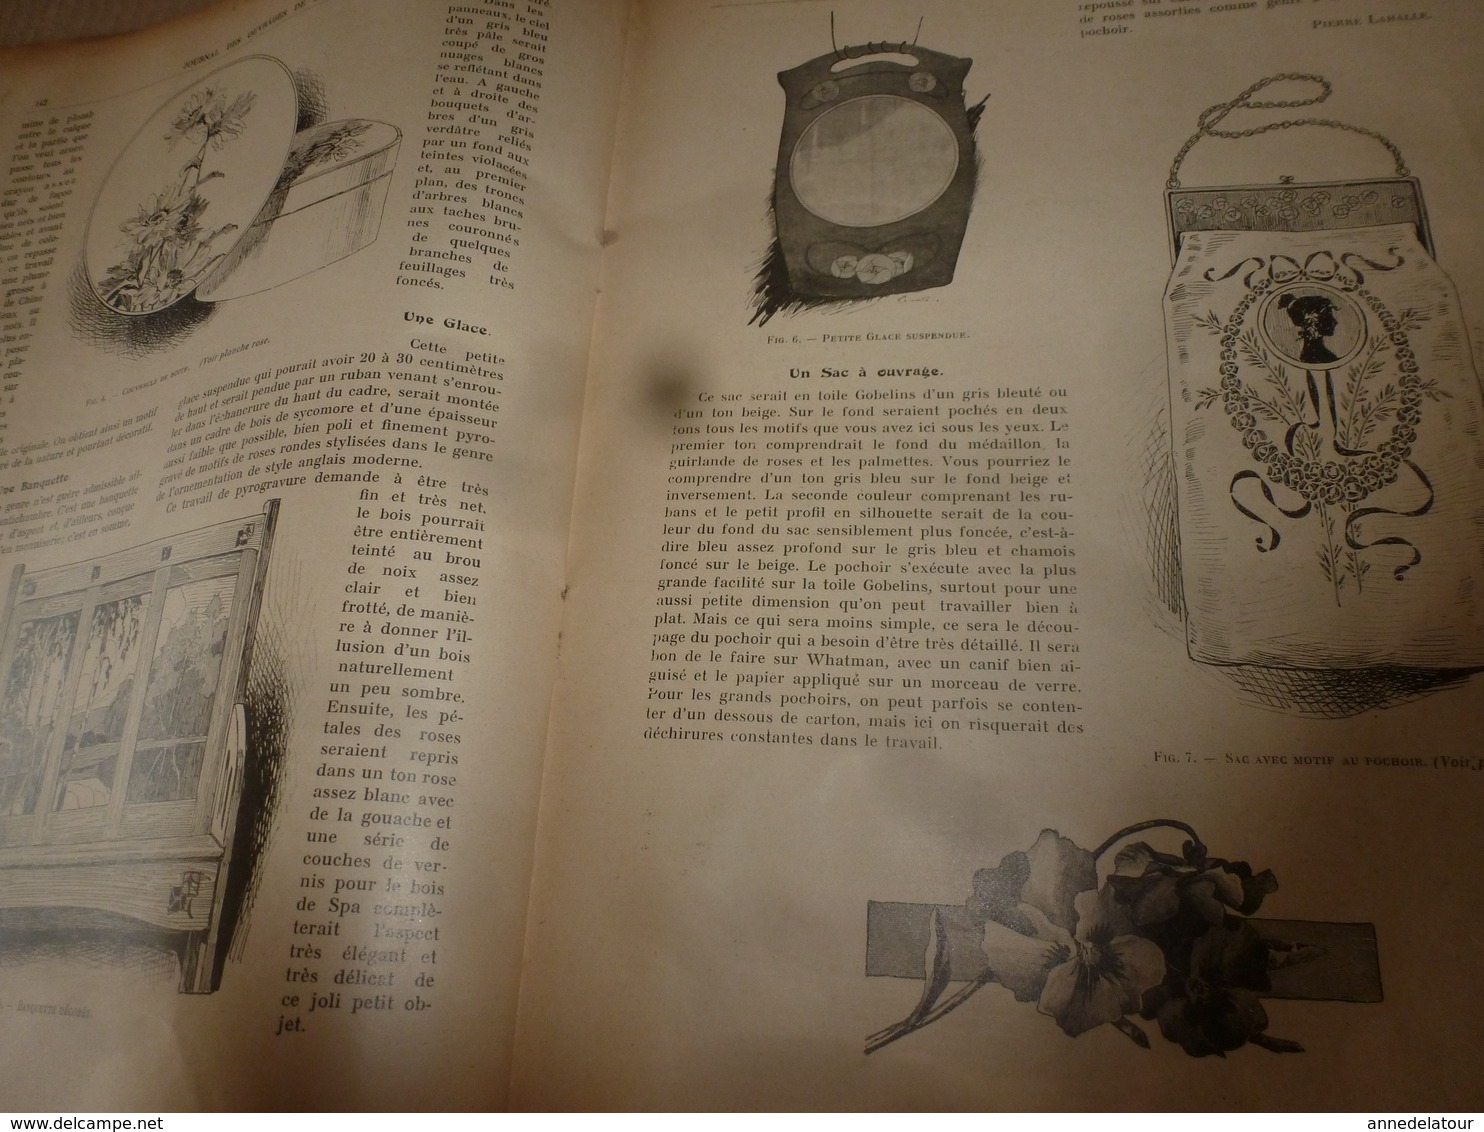 1910 JOURNAL des OUVRAGES de DAMES & dessins décalquables au fer chaud ;Le LIT(antiquité à nos jours); par Laure Tedesco